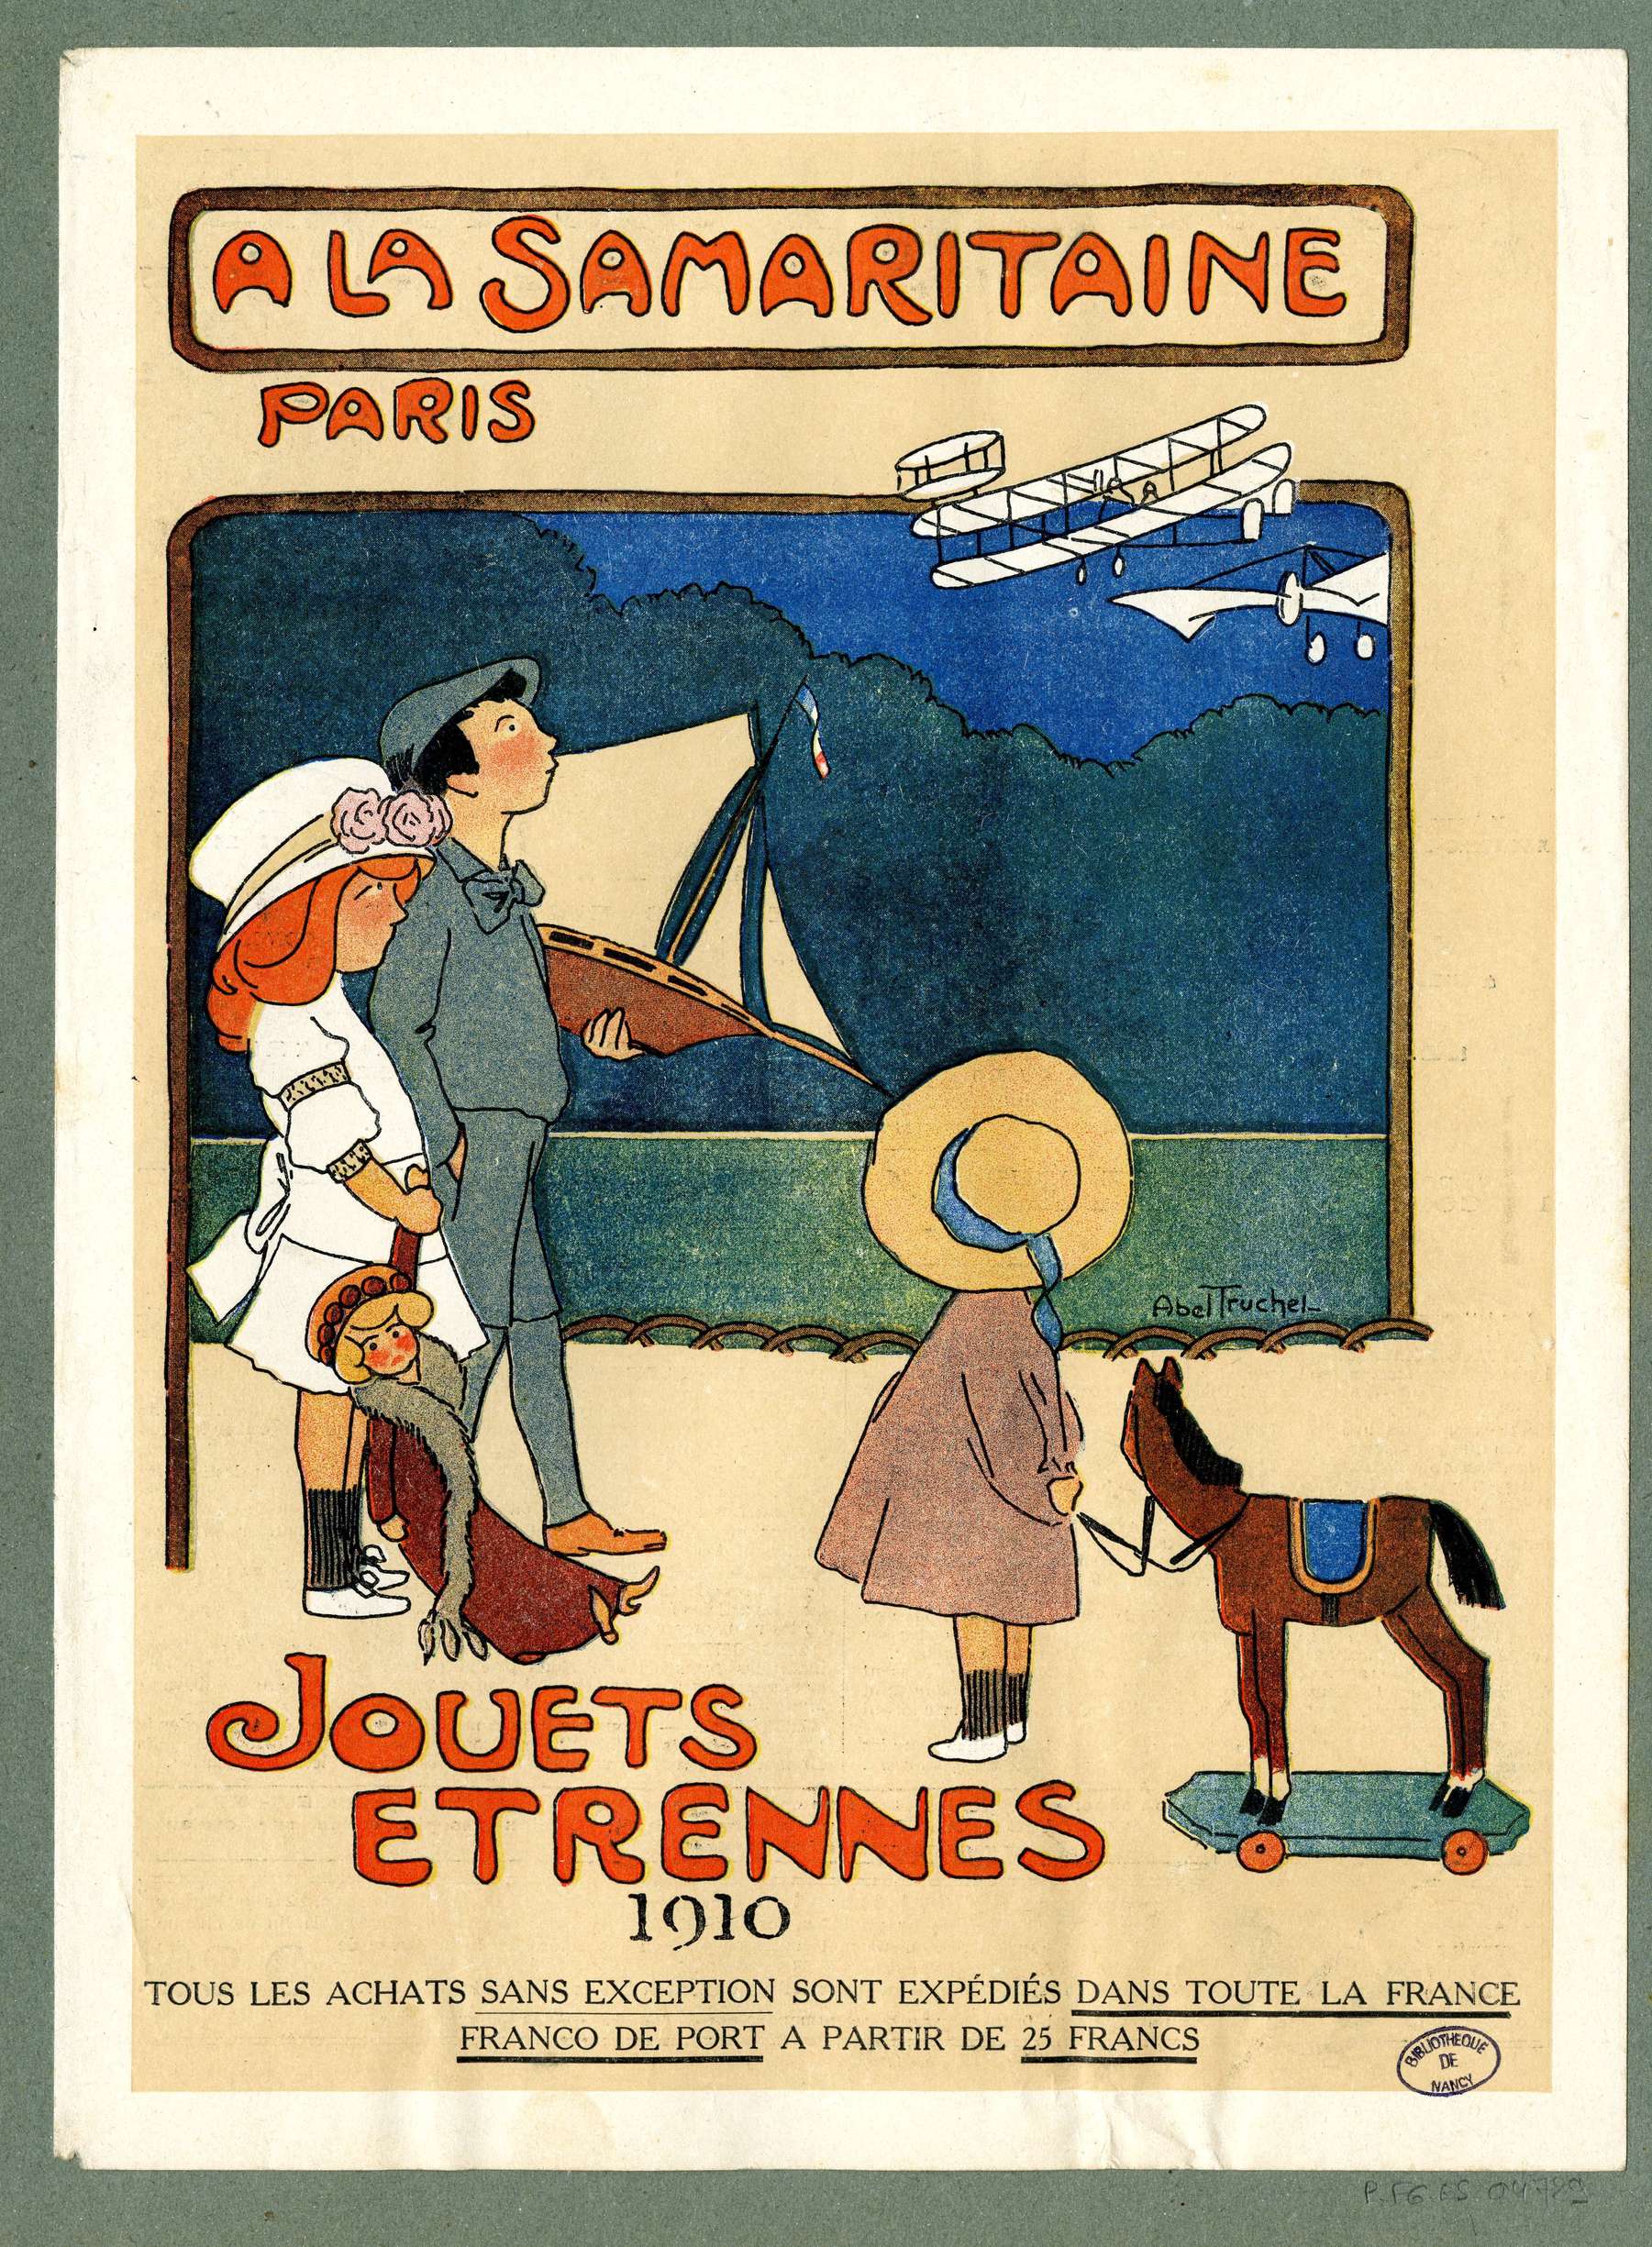 Contenu du "A La Samaritaine" Paris 1910